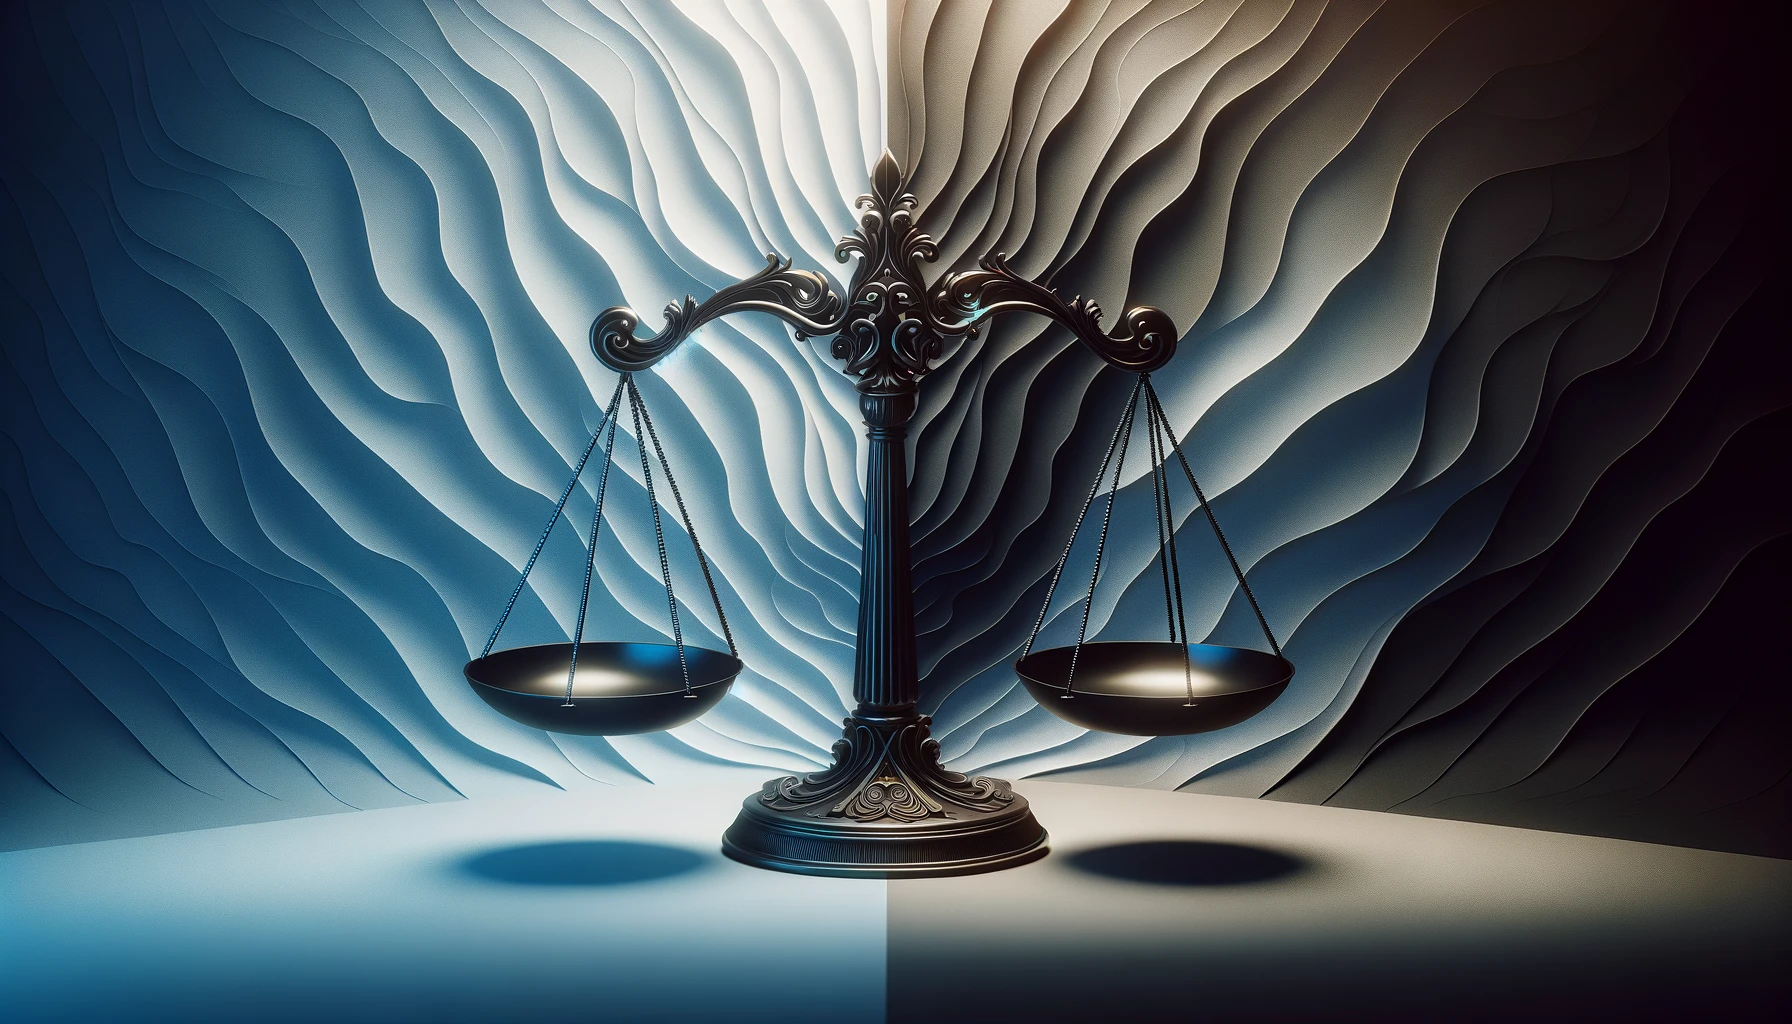 la discrepancia entre justicia y legalidad en la sociedad